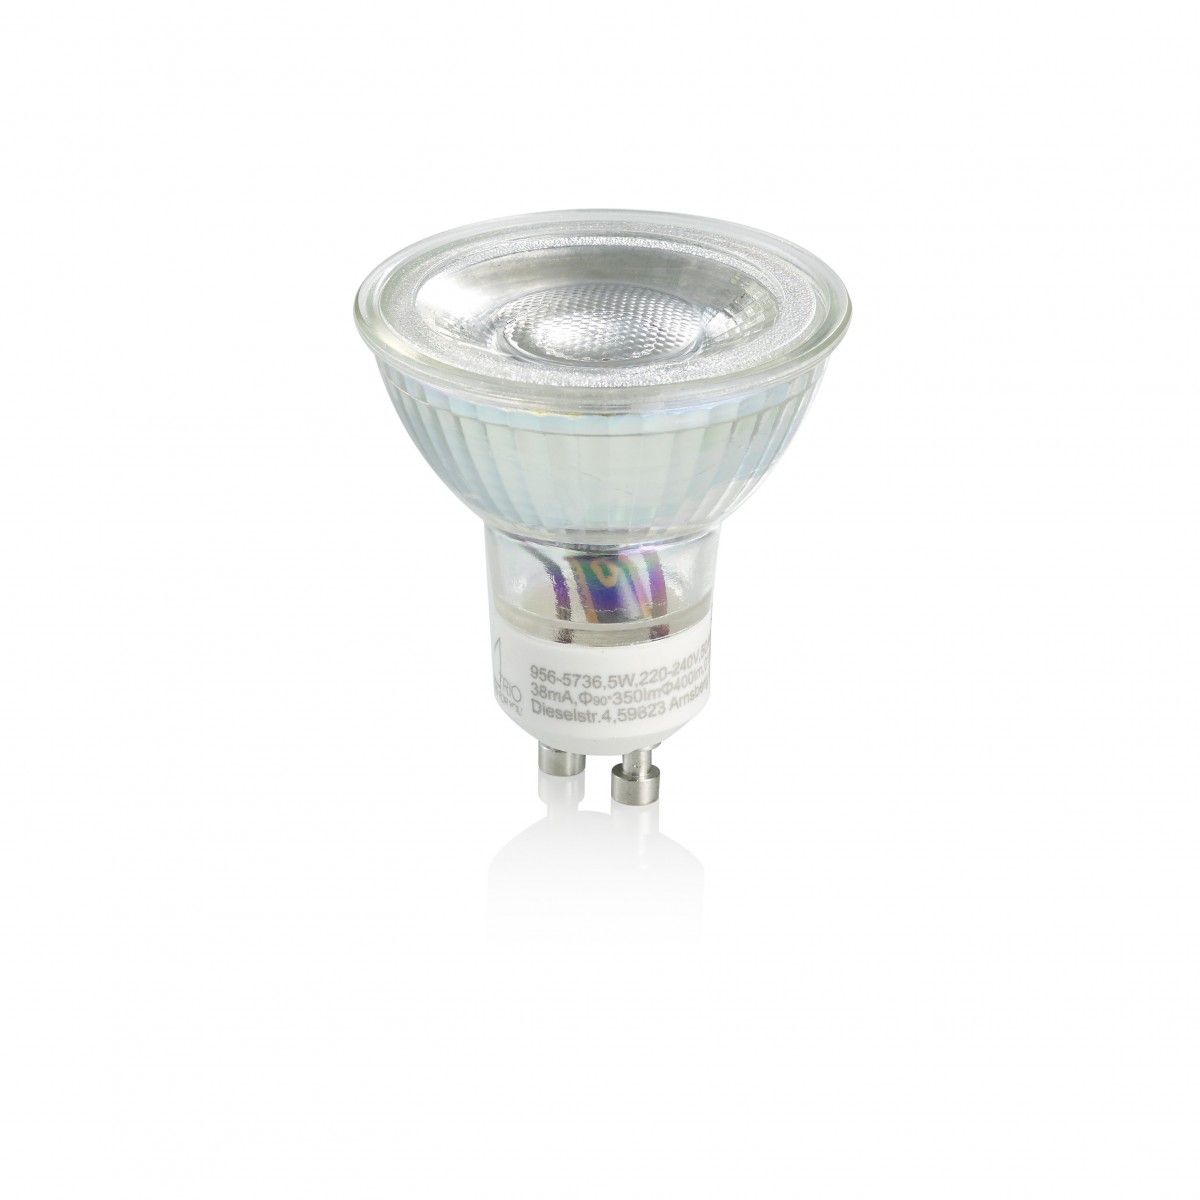 Trio 956-5736 LED bodová žárovka Reflektor 1x5W | GU10 | 400lm | 3000K - 3 fázové stmívání, stříbrná - Dekolamp s.r.o.